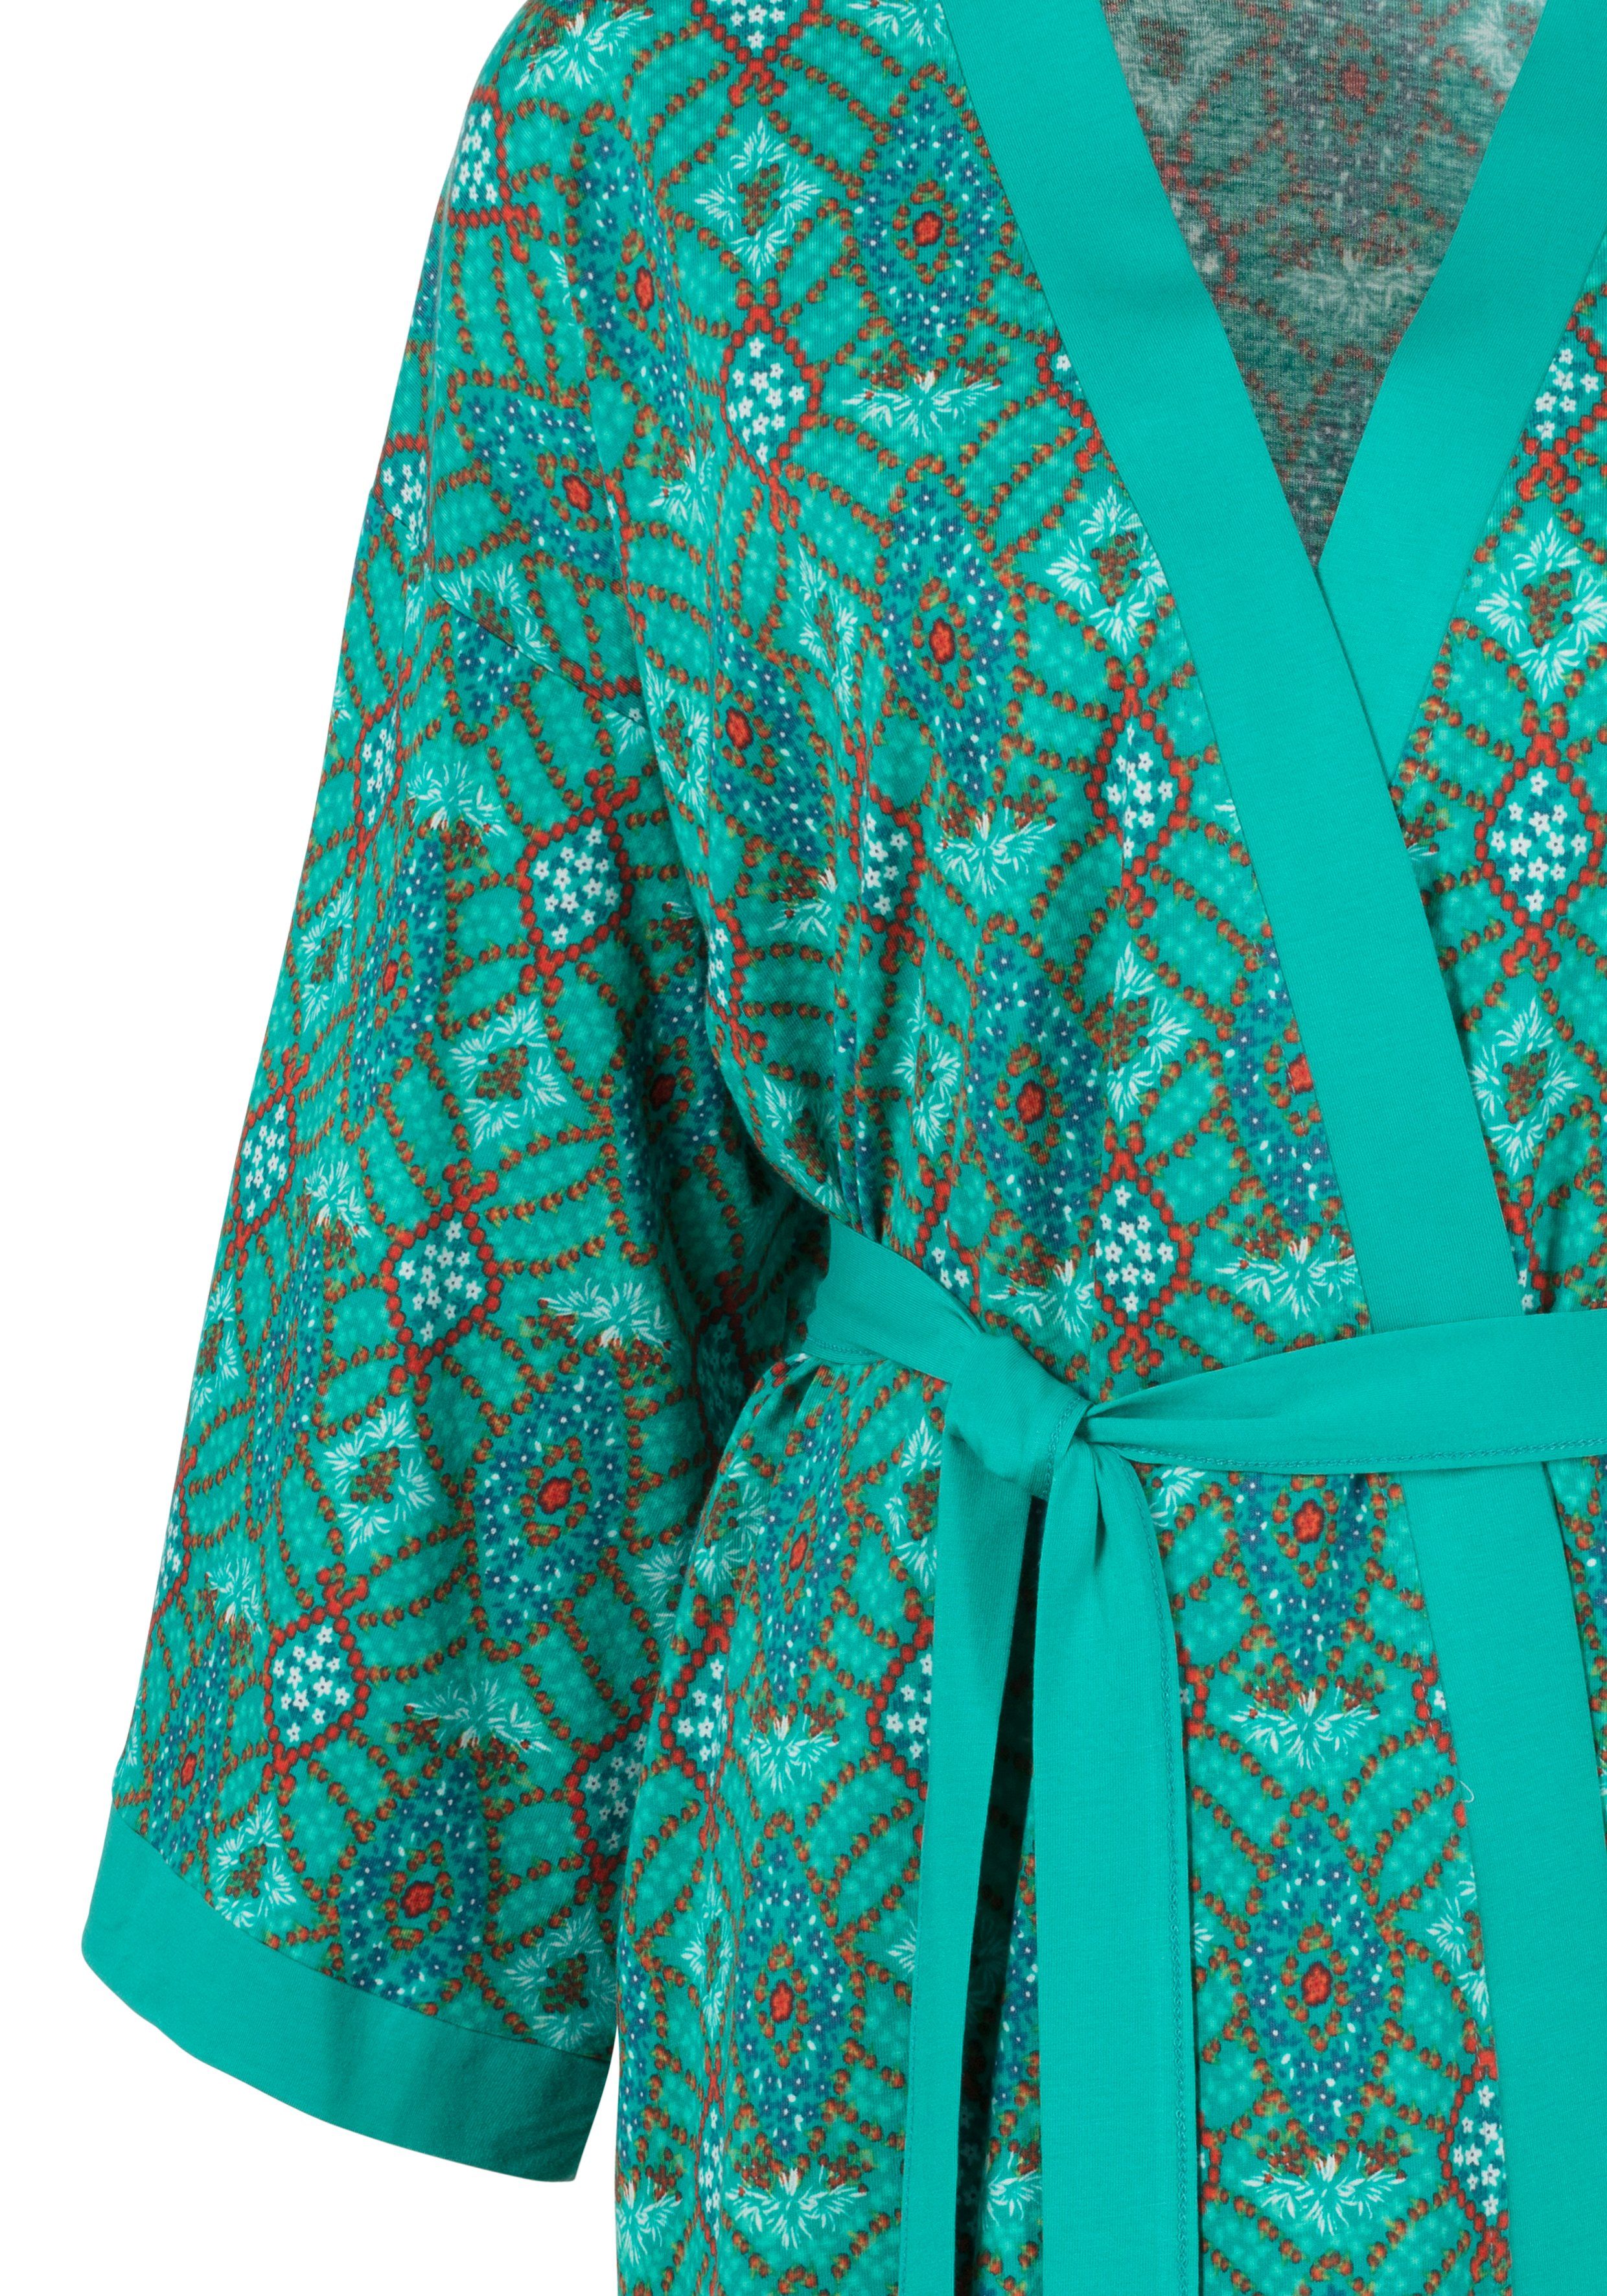 Binden s.Oliver zum Kurzform, Baumwoll-Mix, Gürtel, mit Kimono, Ornamentdruck